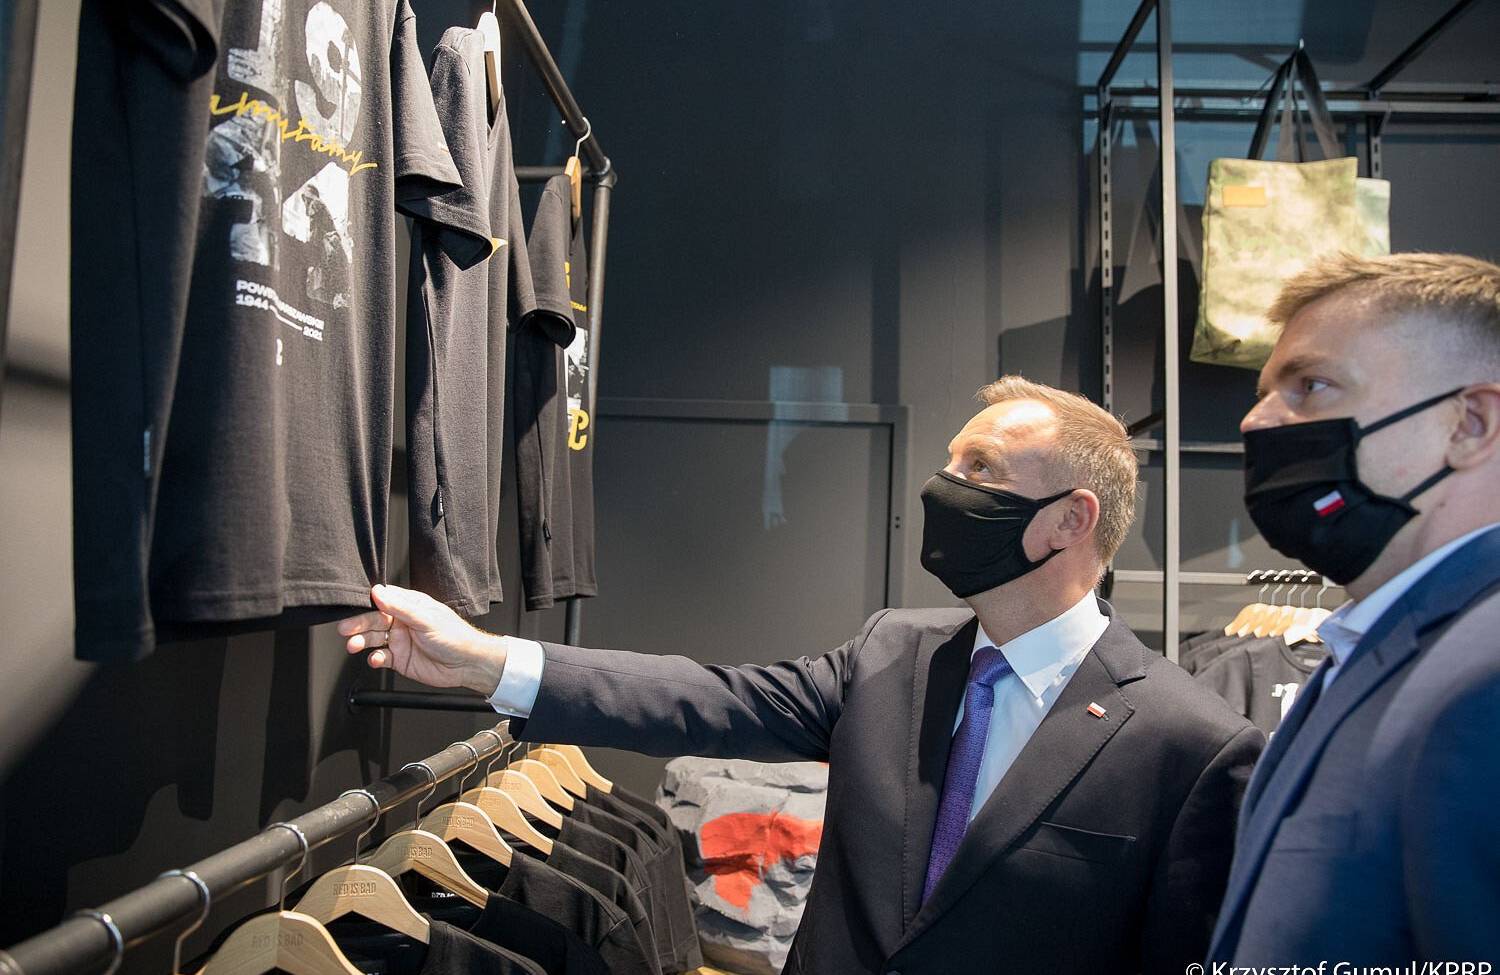 Prezydent Andrzej Duda w towarzystwie szefa firmy Red is Bad Pawła Szopy ogląda odzież w sklepie. Dwóch mężczyzn w czarnych maseczkach i granatowych garniturach stoi przed wywieszonymi na ścianie czarnymi koszulkami. Red is bad